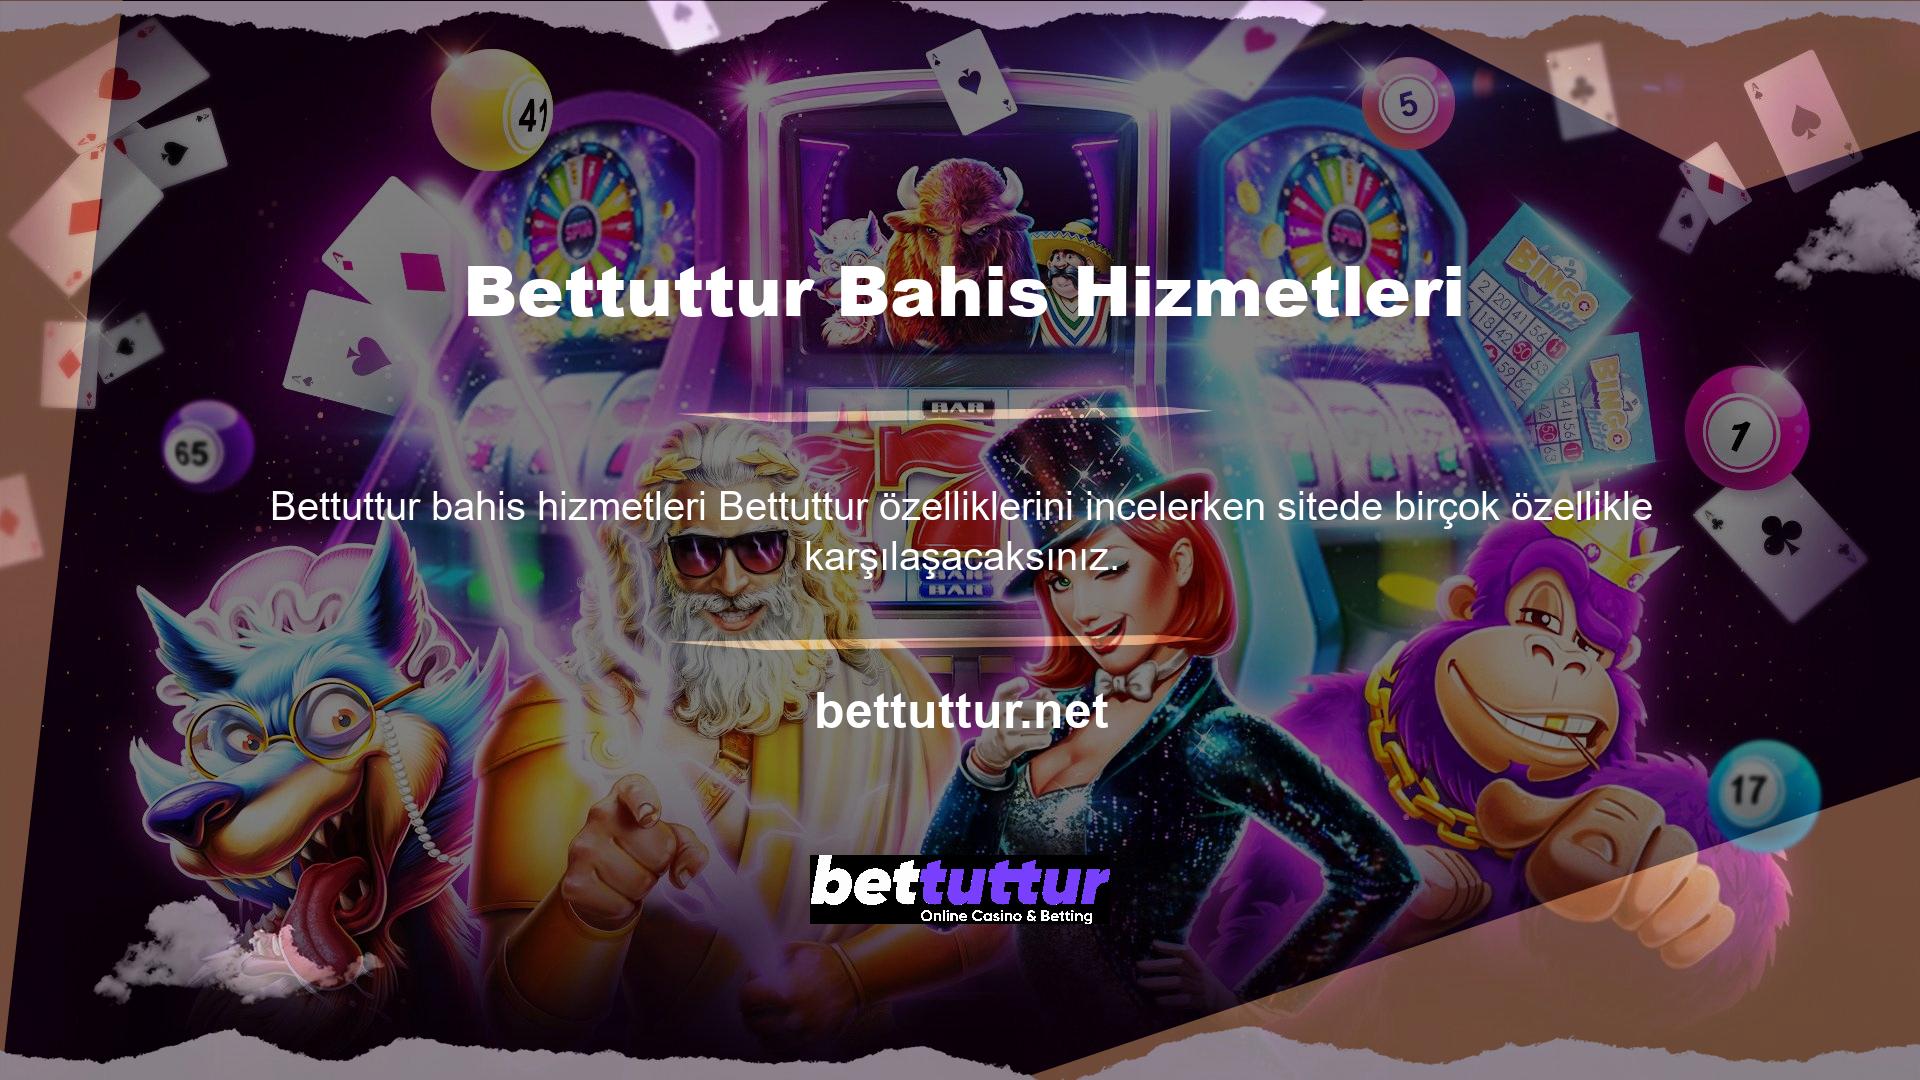 Bettuttur, kullanıcılarına güvenli bahis hizmetlerini garanti eden resmi bir bahis sitesidir